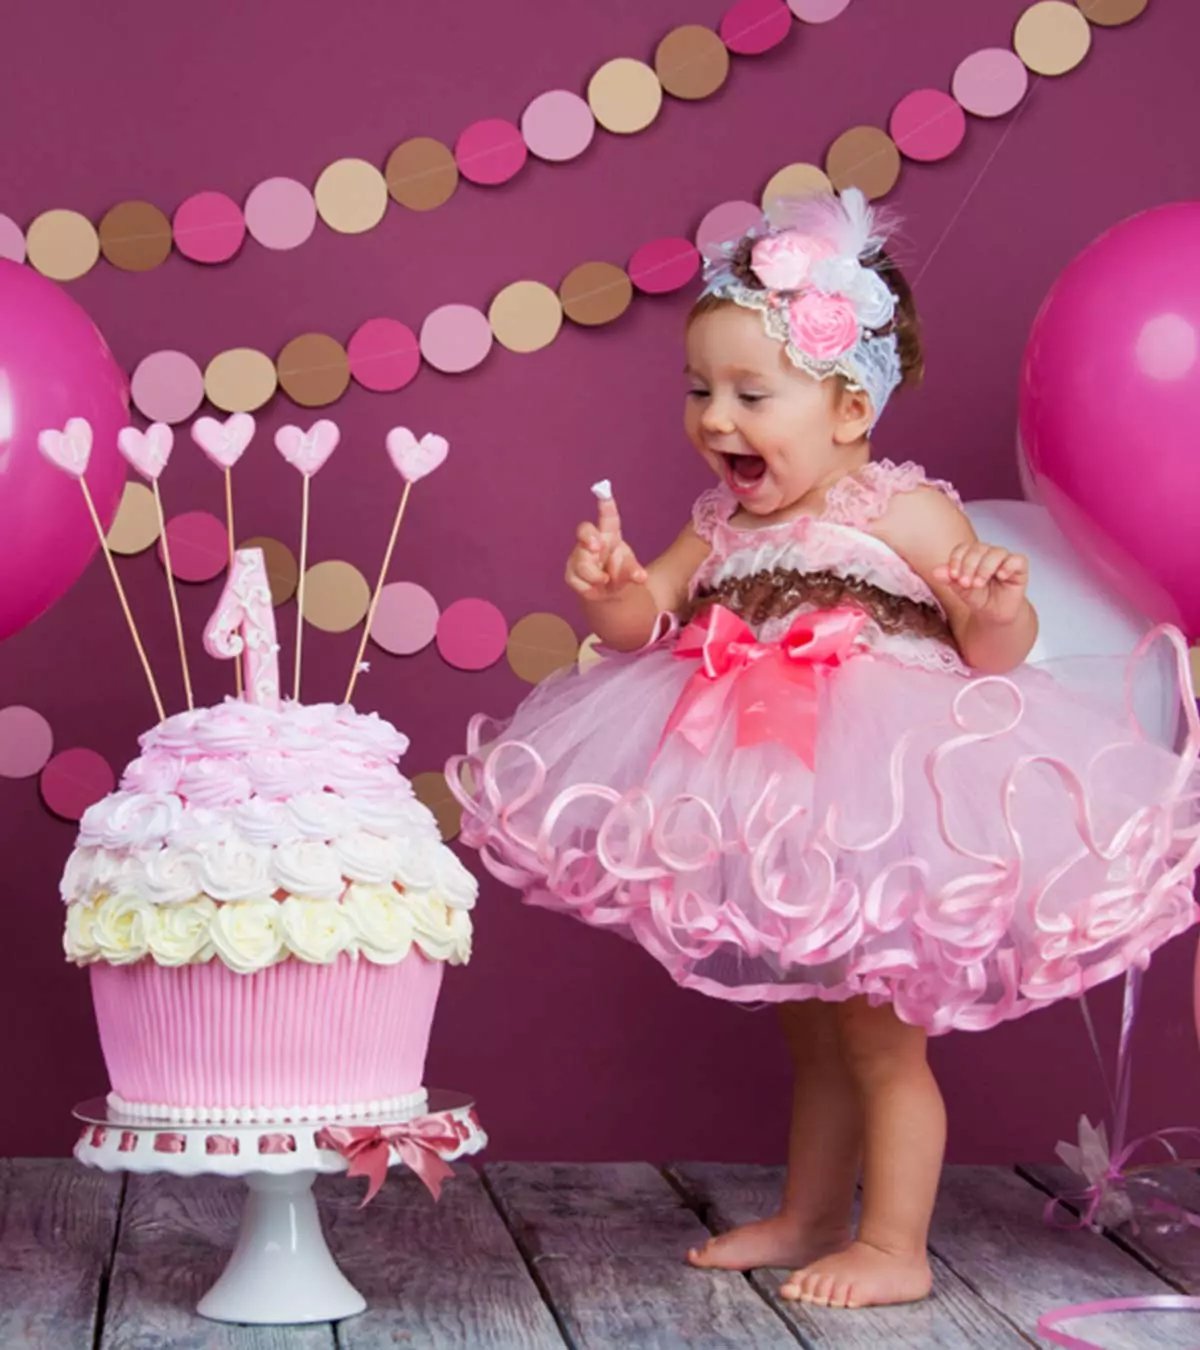 बच्चों का पहला जन्मदिन कैसे मनाएं? थीम्स, चेकलिस्ट व जरूरी टिप्स | First Birthday Party Ideas In Hindi